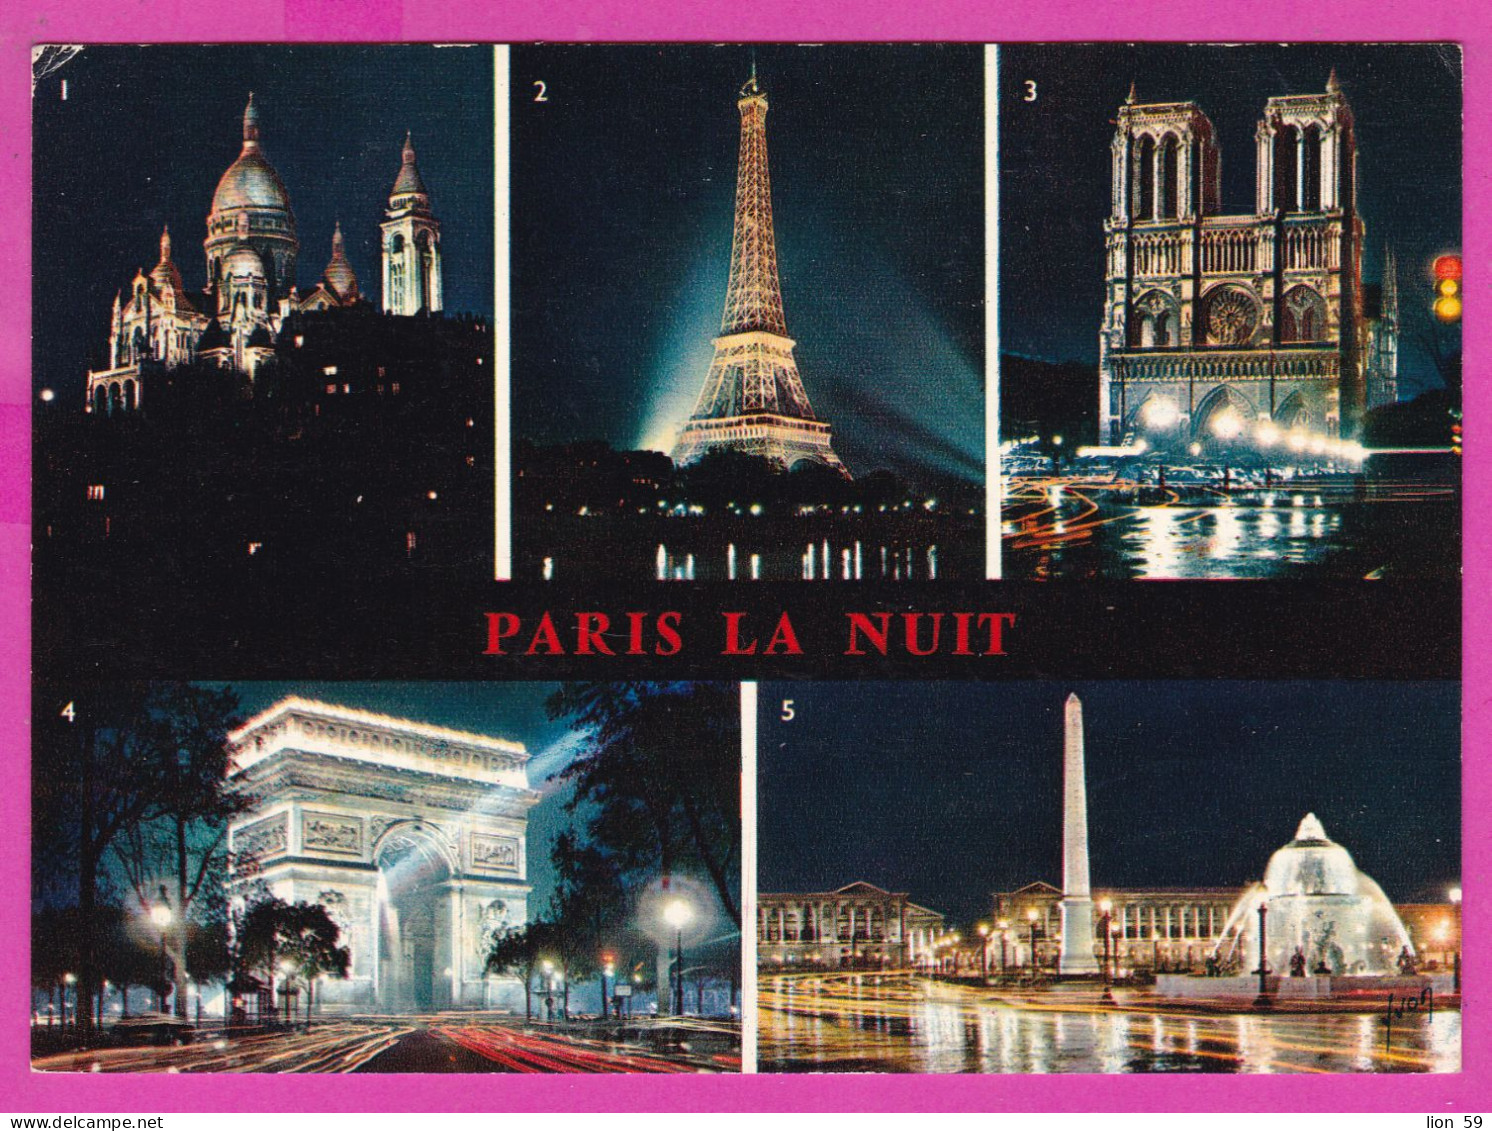 294102 / France - Paris La Nuit Tour Eiffel Sacre-Coeur NotPC 1970 Paris USED 0.45 Fr. - 16 VI 1970 Machine Stamps (ATM) - 1969 Montgeron – Papier Blanc – Frama/Satas